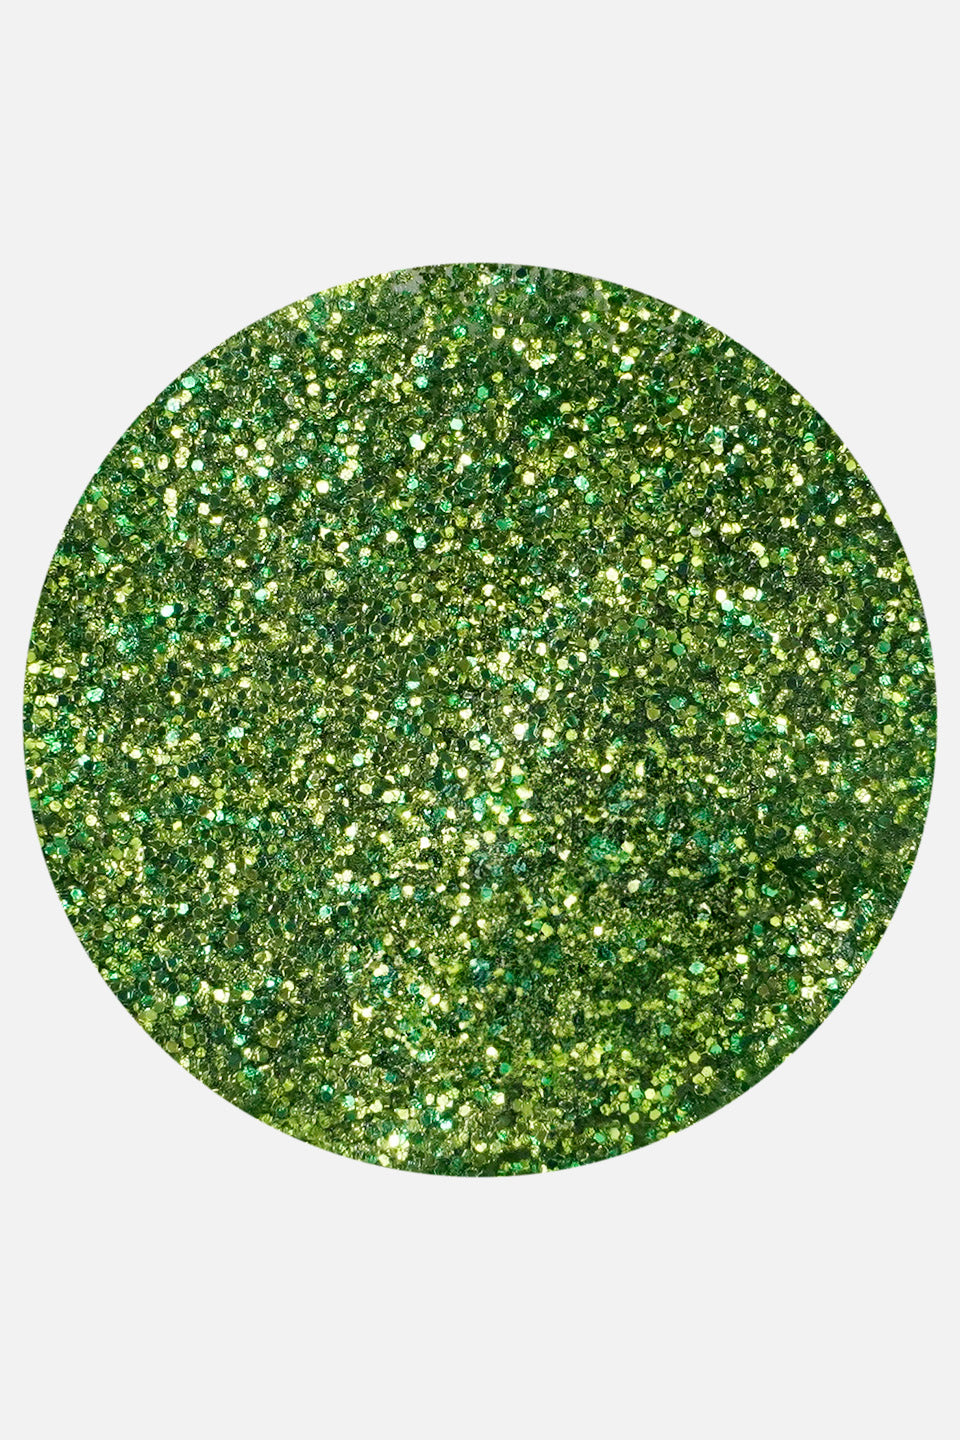 Polvere acrilica verde smeraldo glitter 5 g